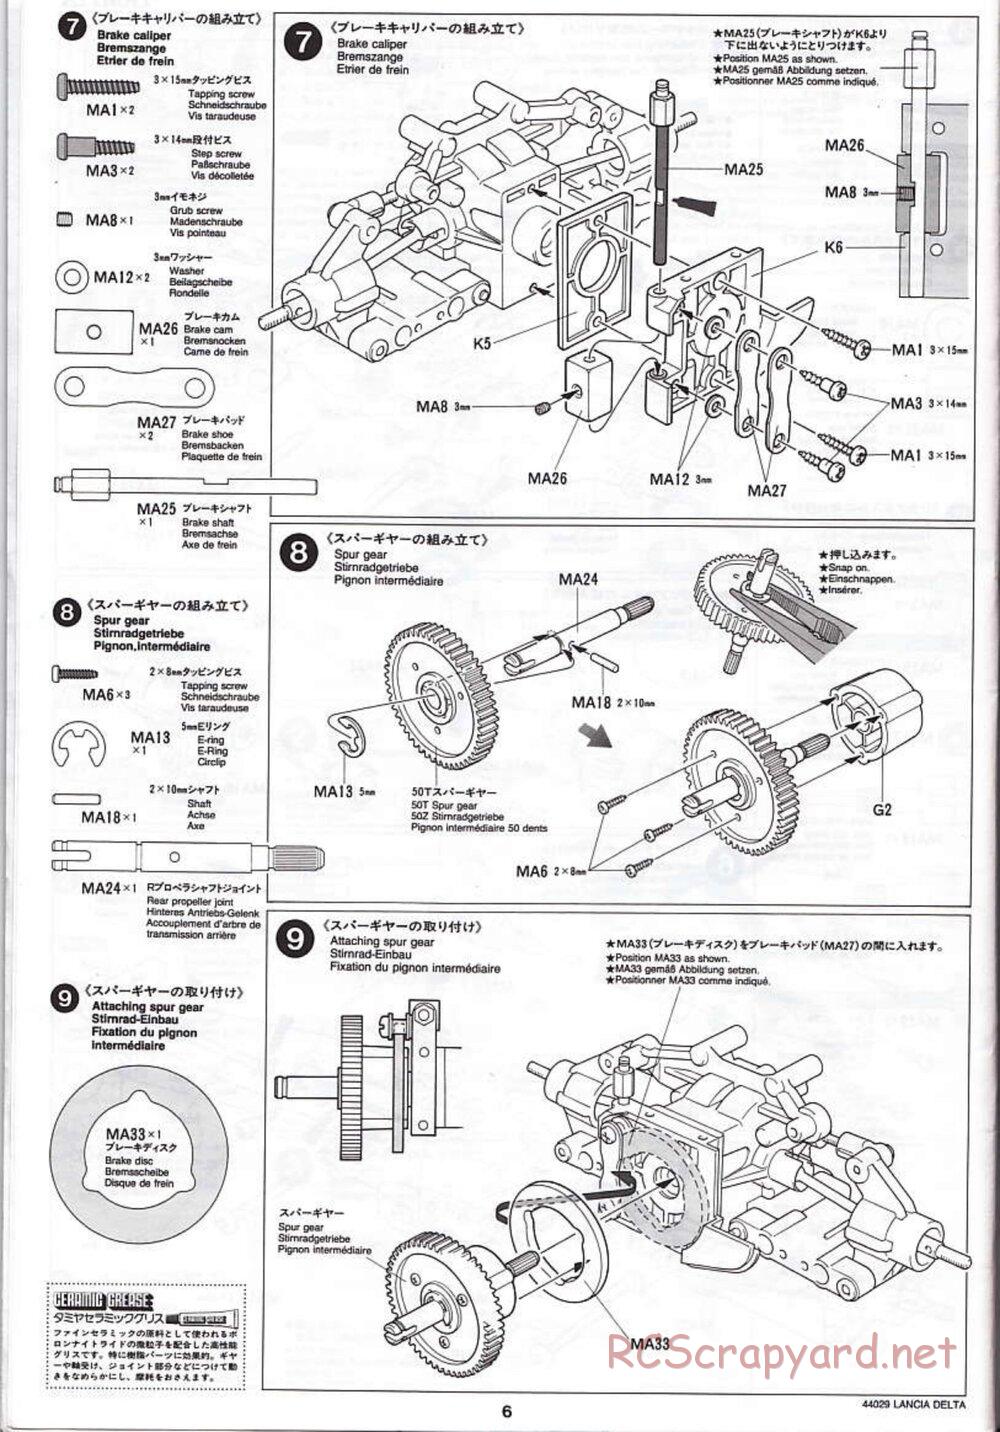 Tamiya - Lancia Delta HF Integrale - TG10 Mk.1 Chassis - Manual - Page 6